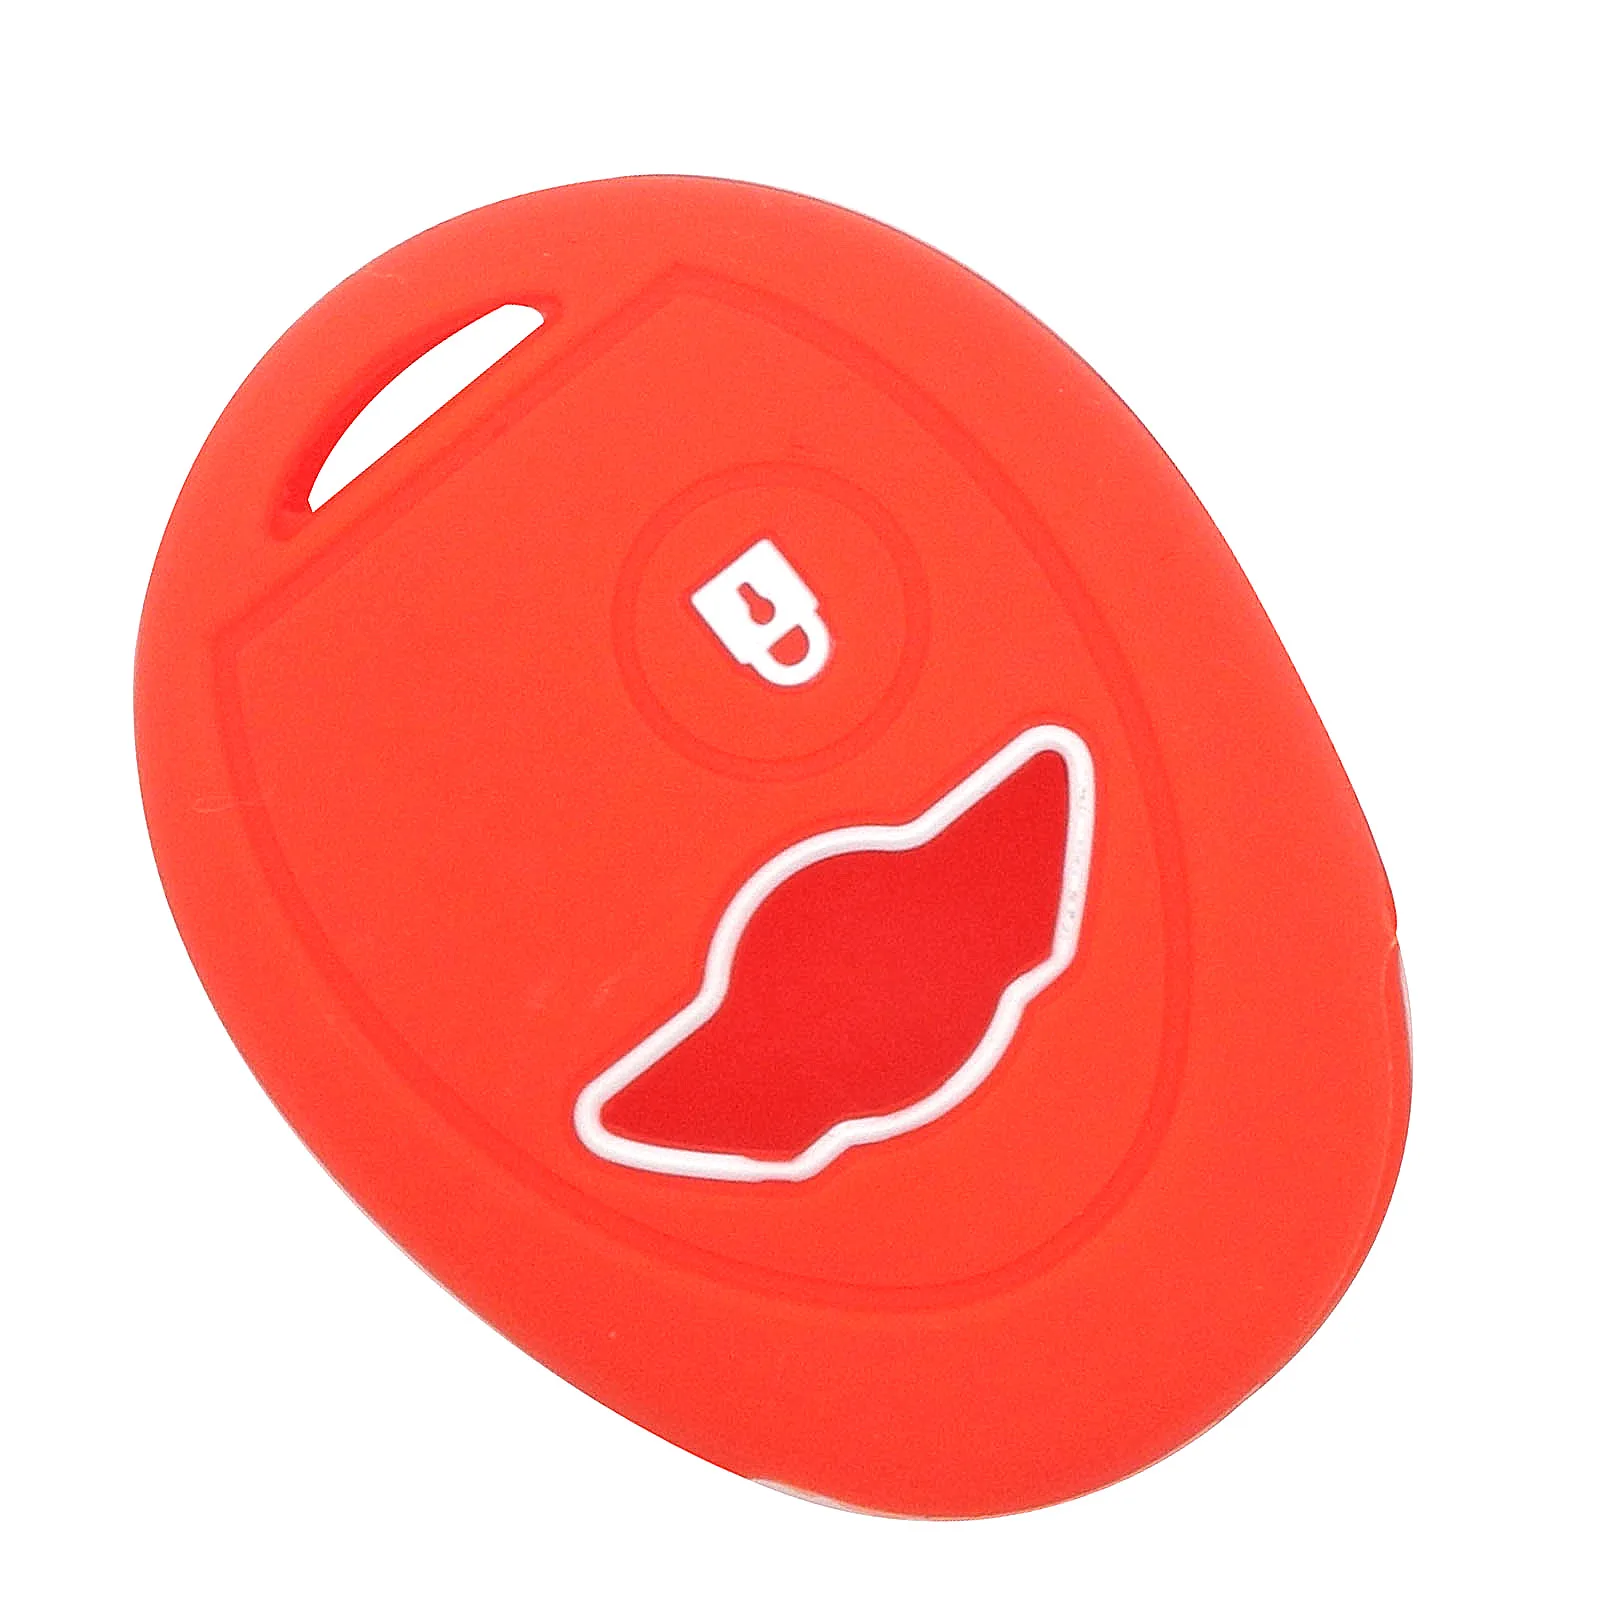 Jingyuqin силиконовый чехол для ключа автомобиля bmw Mini Cooper R50 R53 1 кнопка дистанционного ключа чехол защитный держатель - Название цвета: Красный